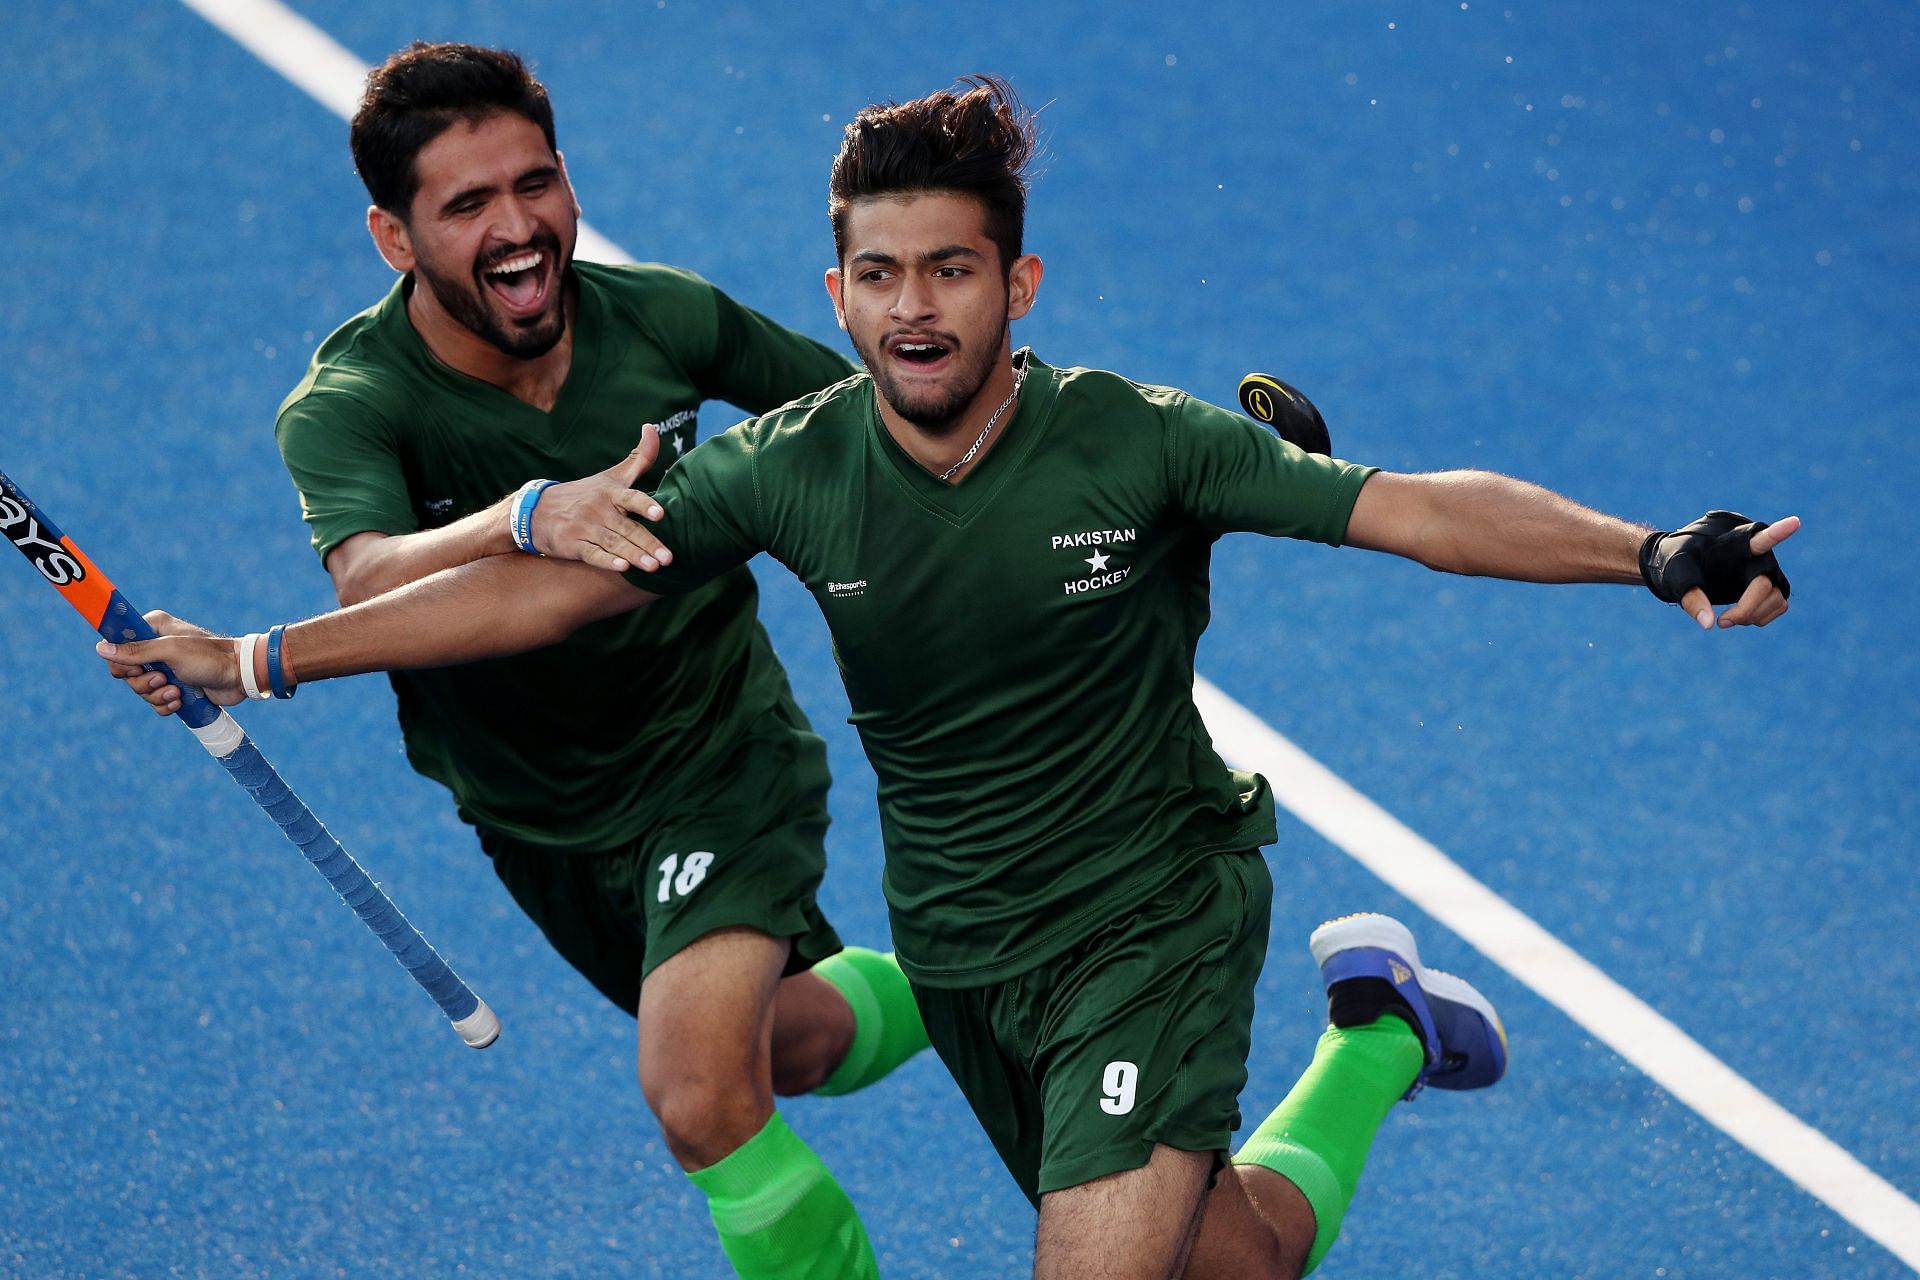 India take on Pakistan in their next pool game